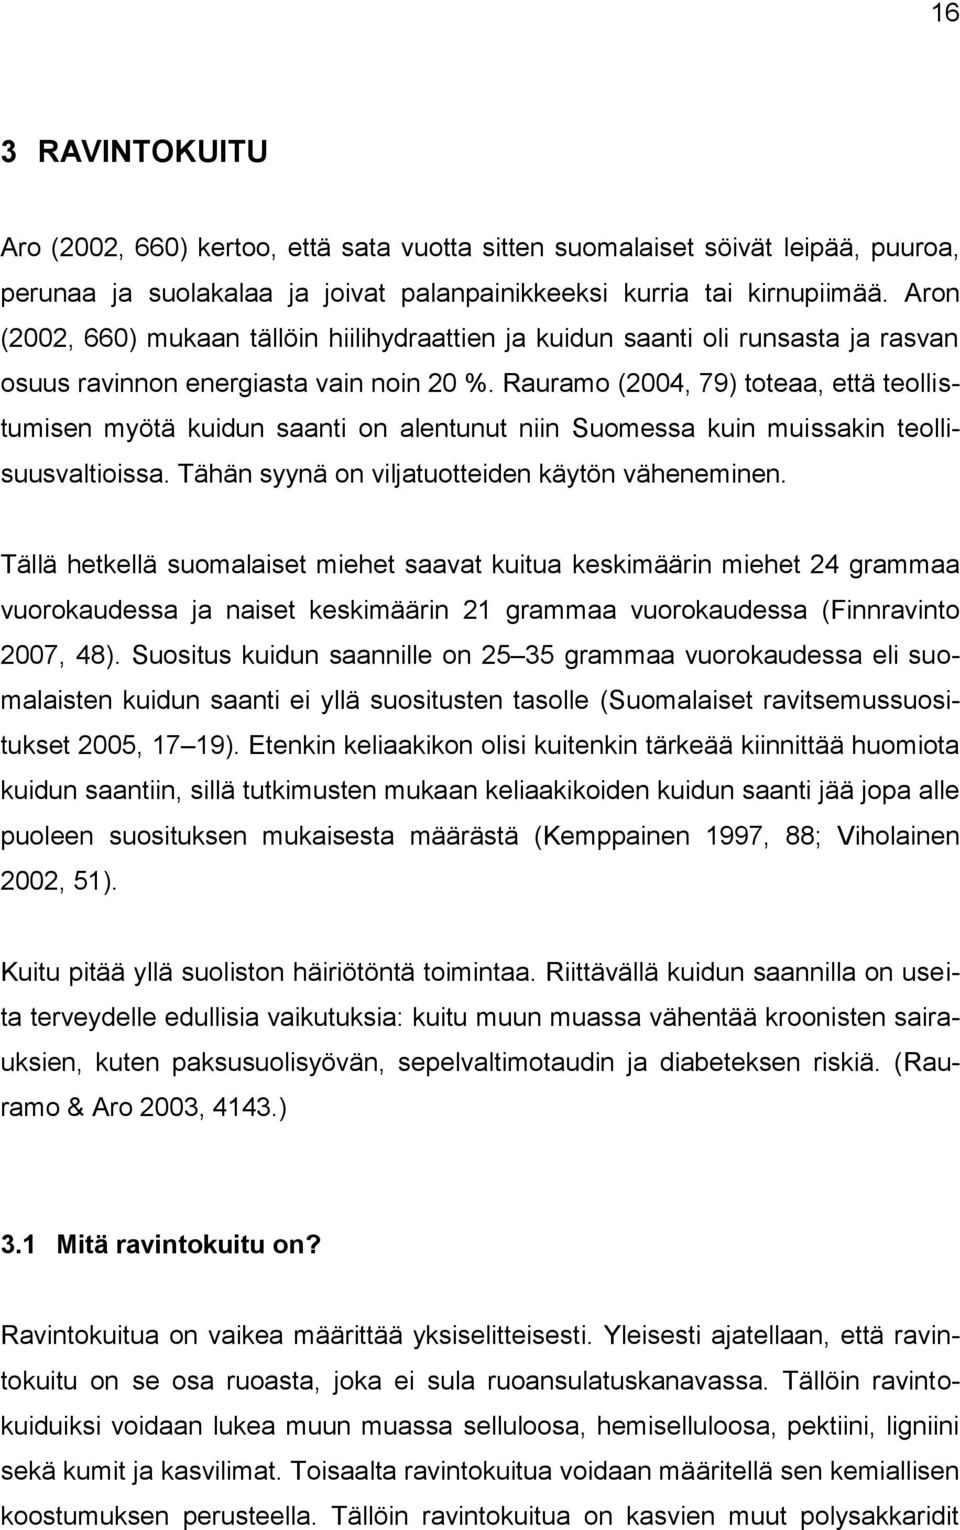 Rauramo (2004, 79) toteaa, että teollistumisen myötä kuidun saanti on alentunut niin Suomessa kuin muissakin teollisuusvaltioissa. Tähän syynä on viljatuotteiden käytön väheneminen.